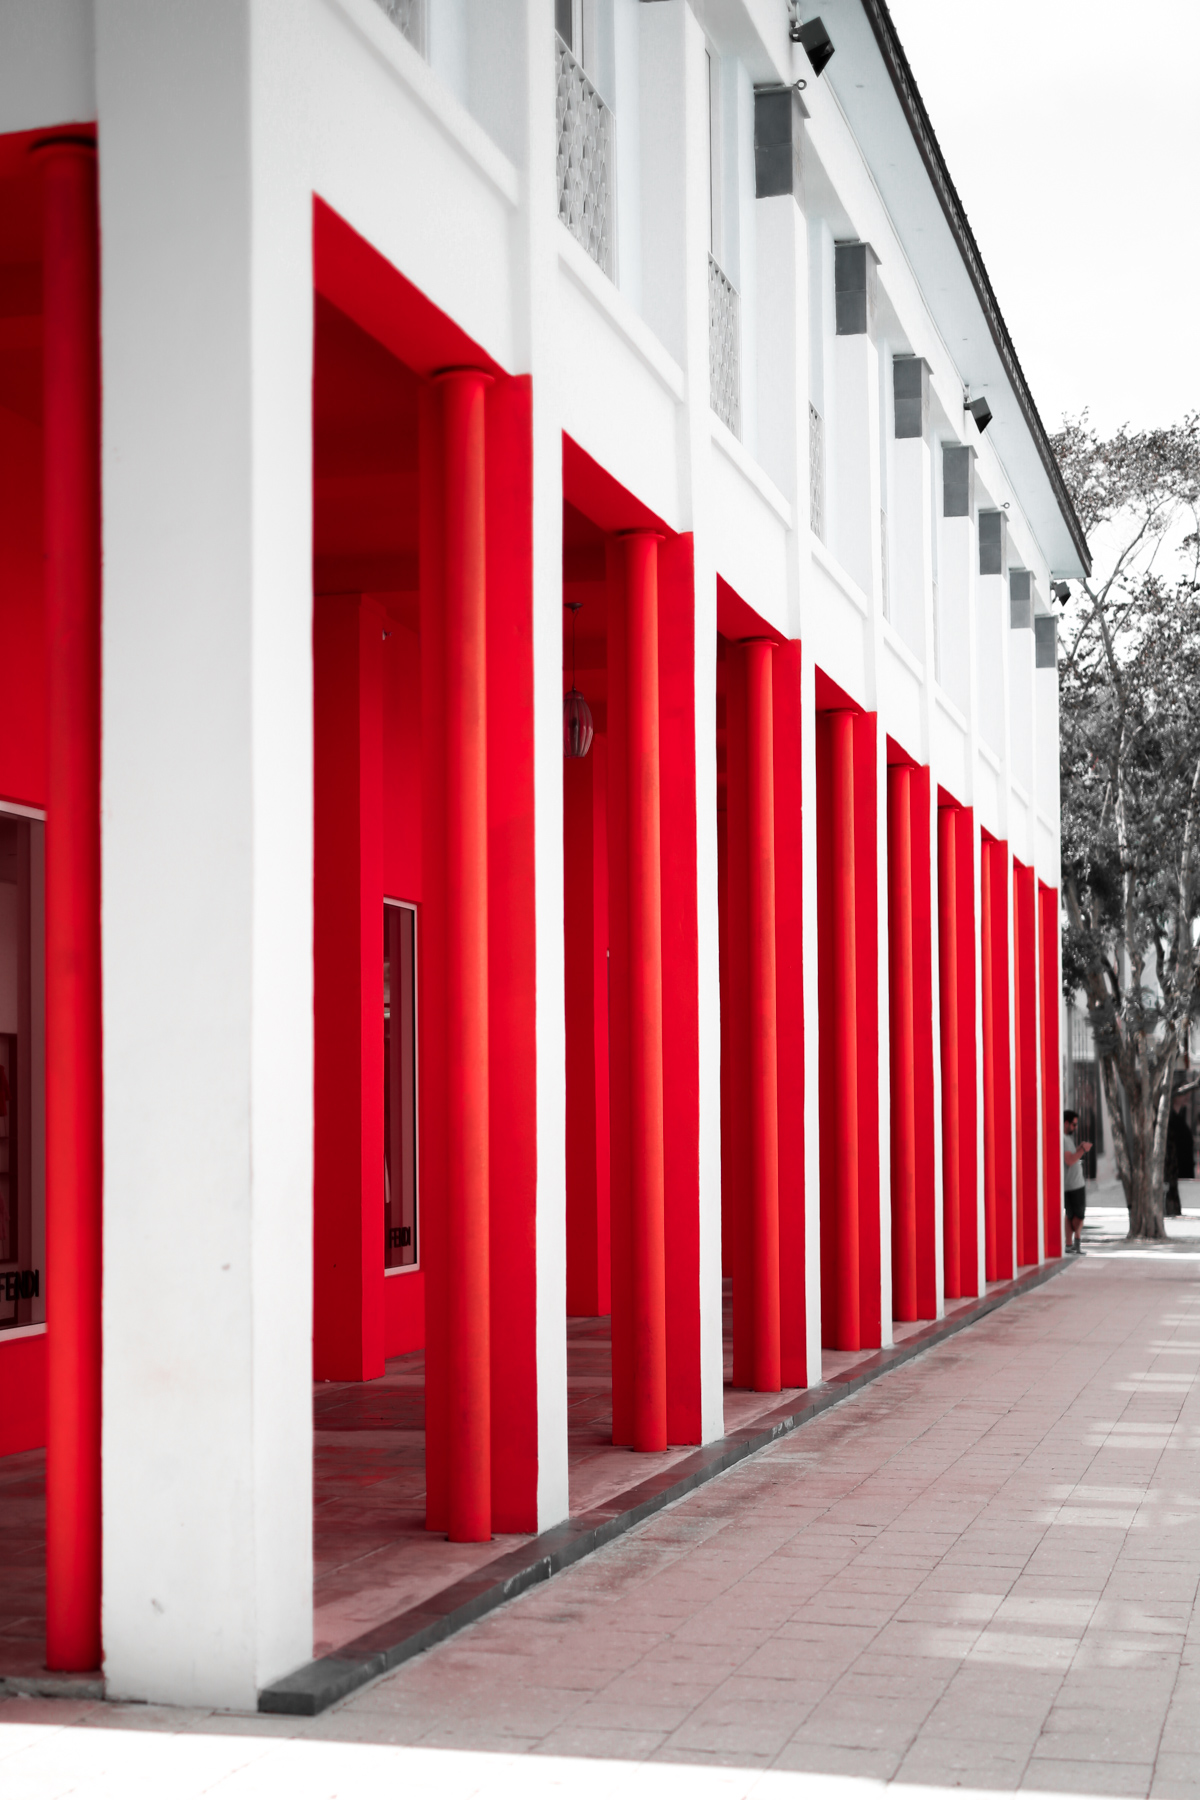 Architecture at the Miami Design District